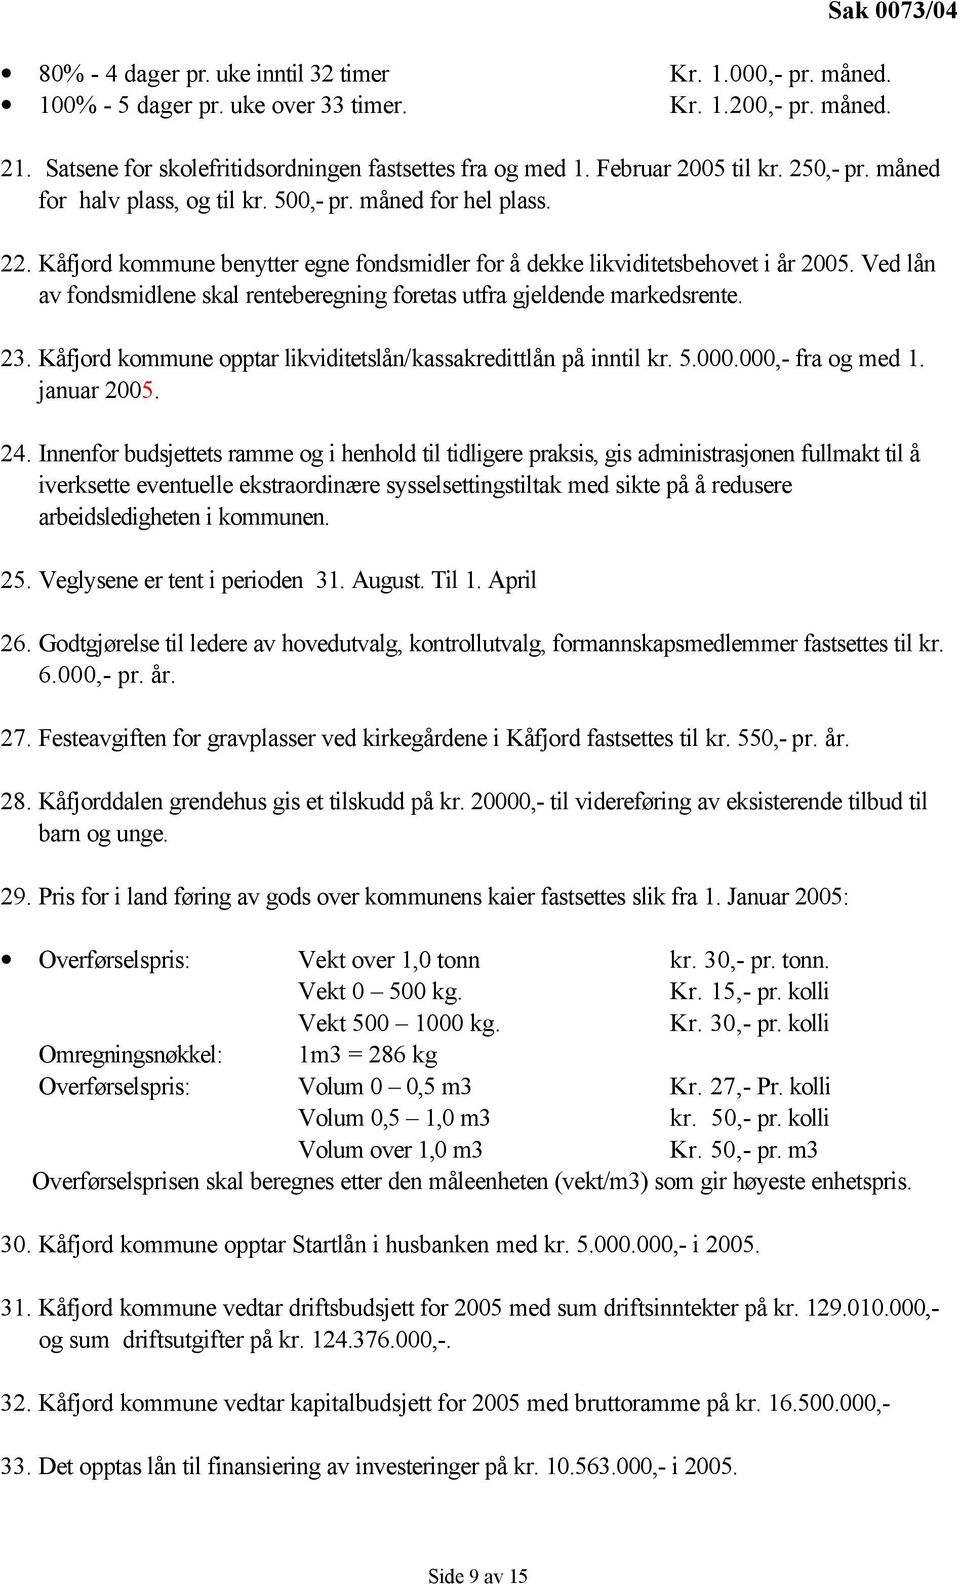 Ved lån av fondsmidlene skal renteberegning foretas utfra gjeldende markedsrente. 23. Kåfjord kommune opptar likviditetslån/kassakredittlån på inntil kr. 5.000.000,- fra og med 1. januar 2005. 24.